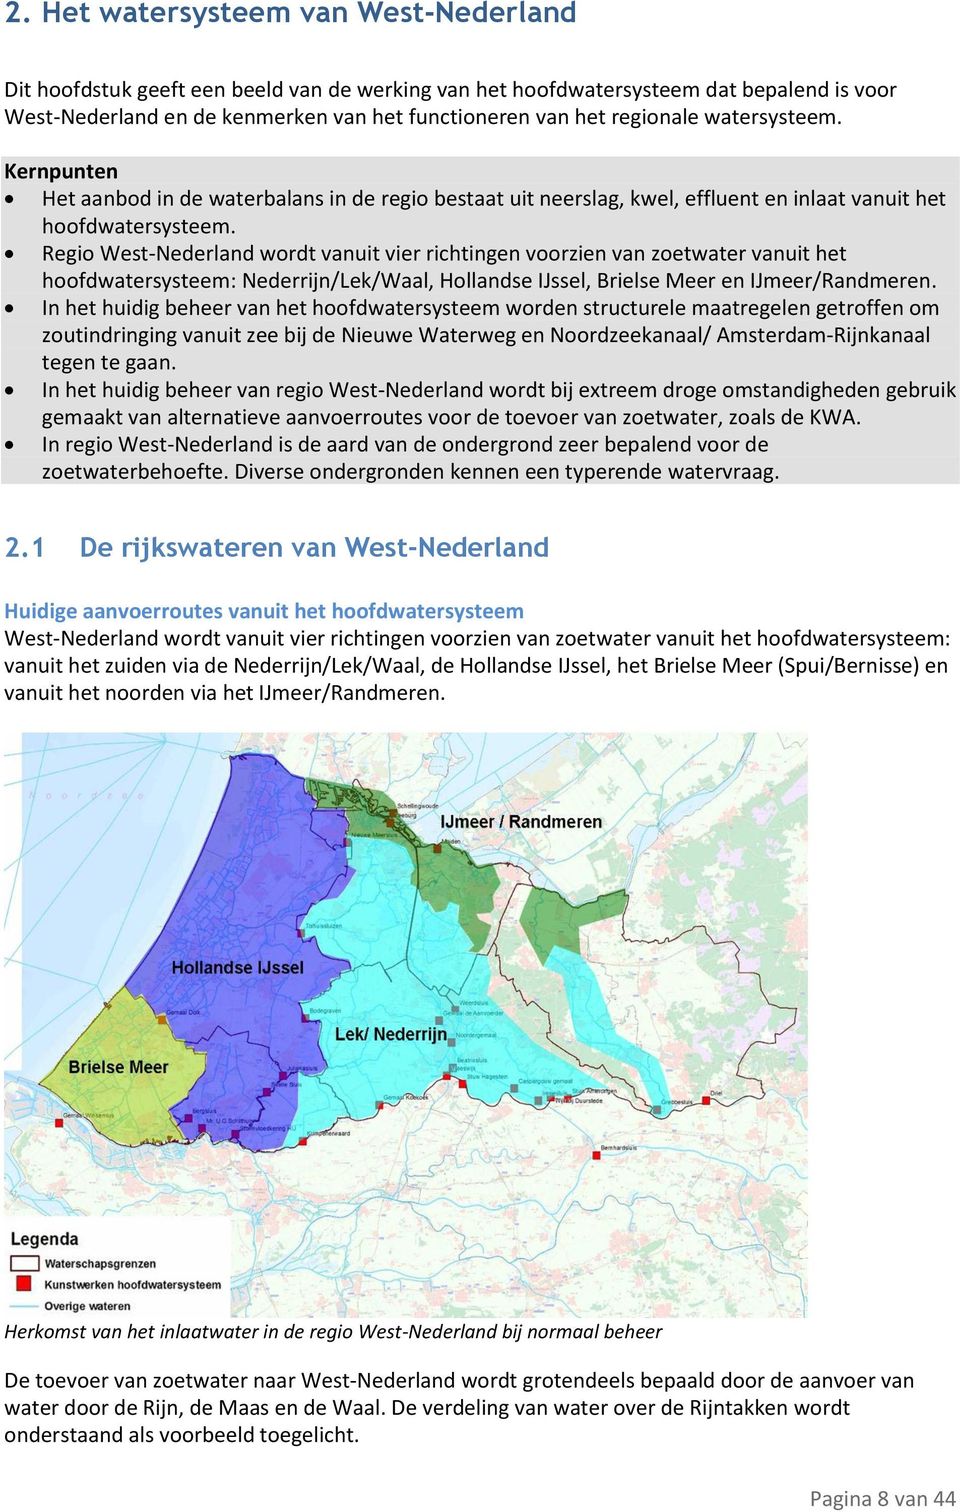 Regio West-Nederland wordt vanuit vier richtingen voorzien van zoetwater vanuit het hoofdwatersysteem: Nederrijn/Lek/Waal, Hollandse IJssel, Brielse Meer en IJmeer/Randmeren.